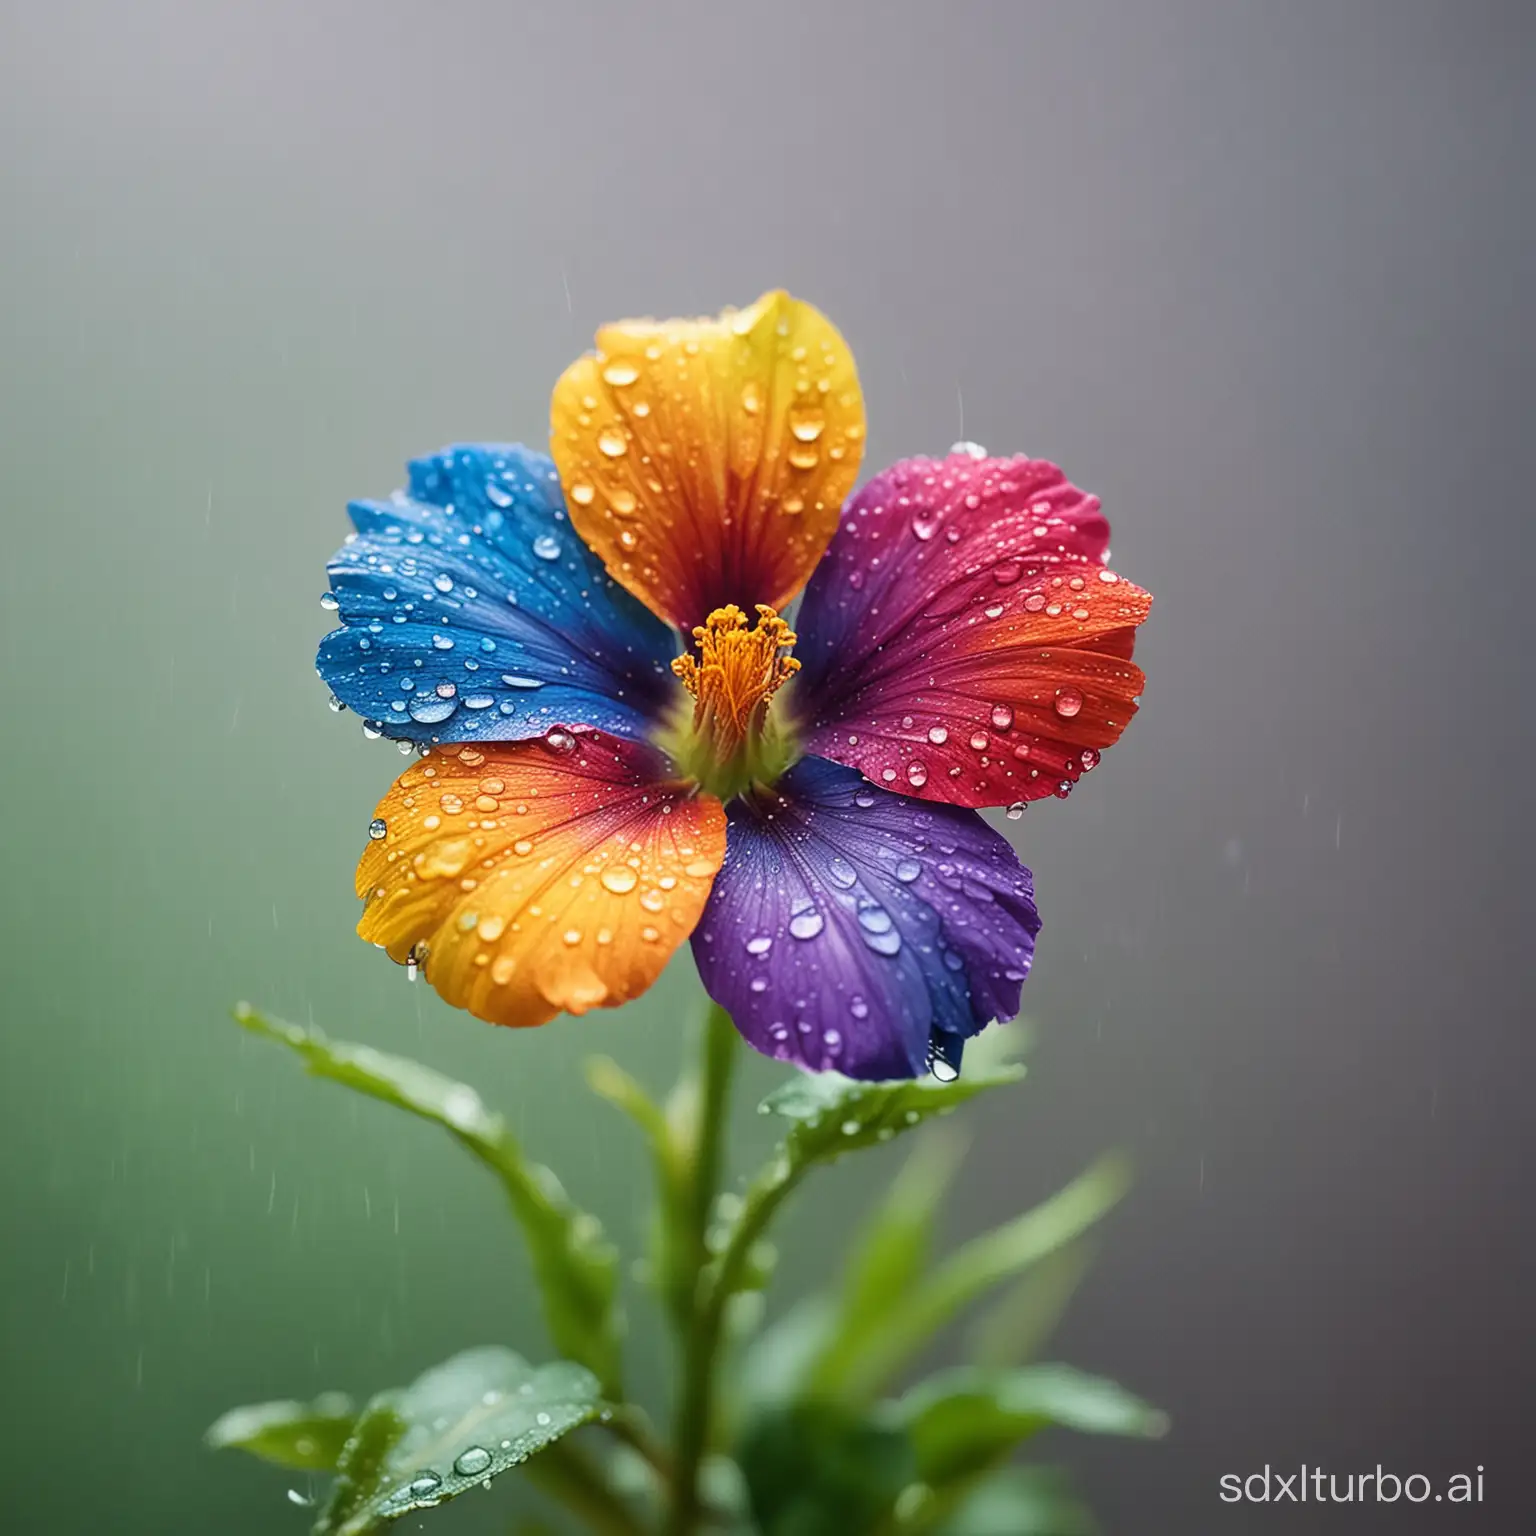 A rainbow flower, rain, tilt-shift photography.